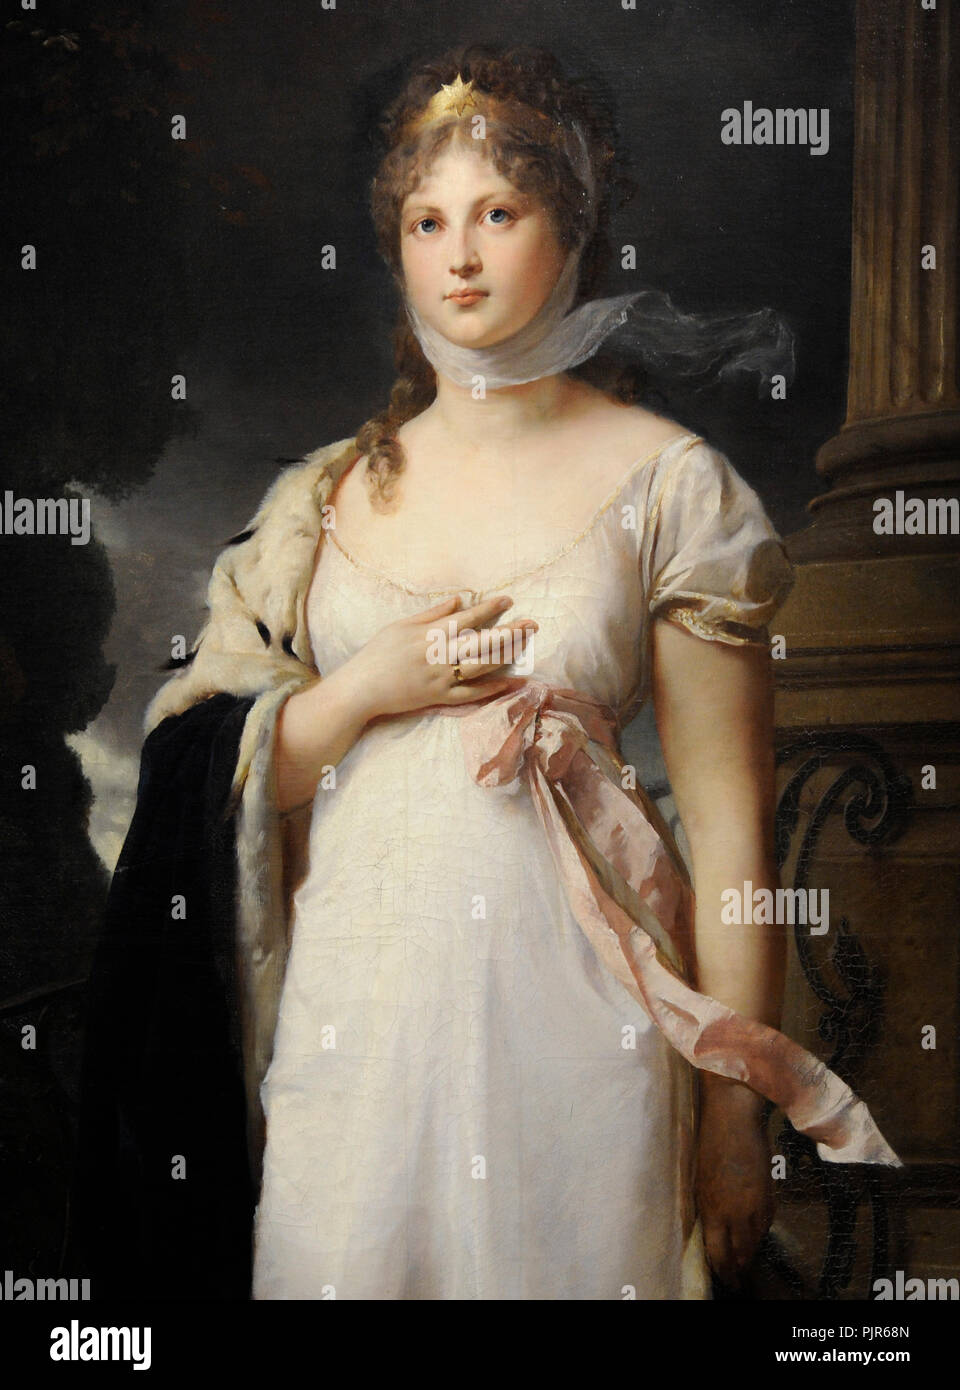 La regina Luisa di Prussia (1776-1810). Ritratto di Gustav Richter (1823-1884), 1879. Dettaglio. Wallraf-Richartz Museum. Colonia. Germania. Foto Stock